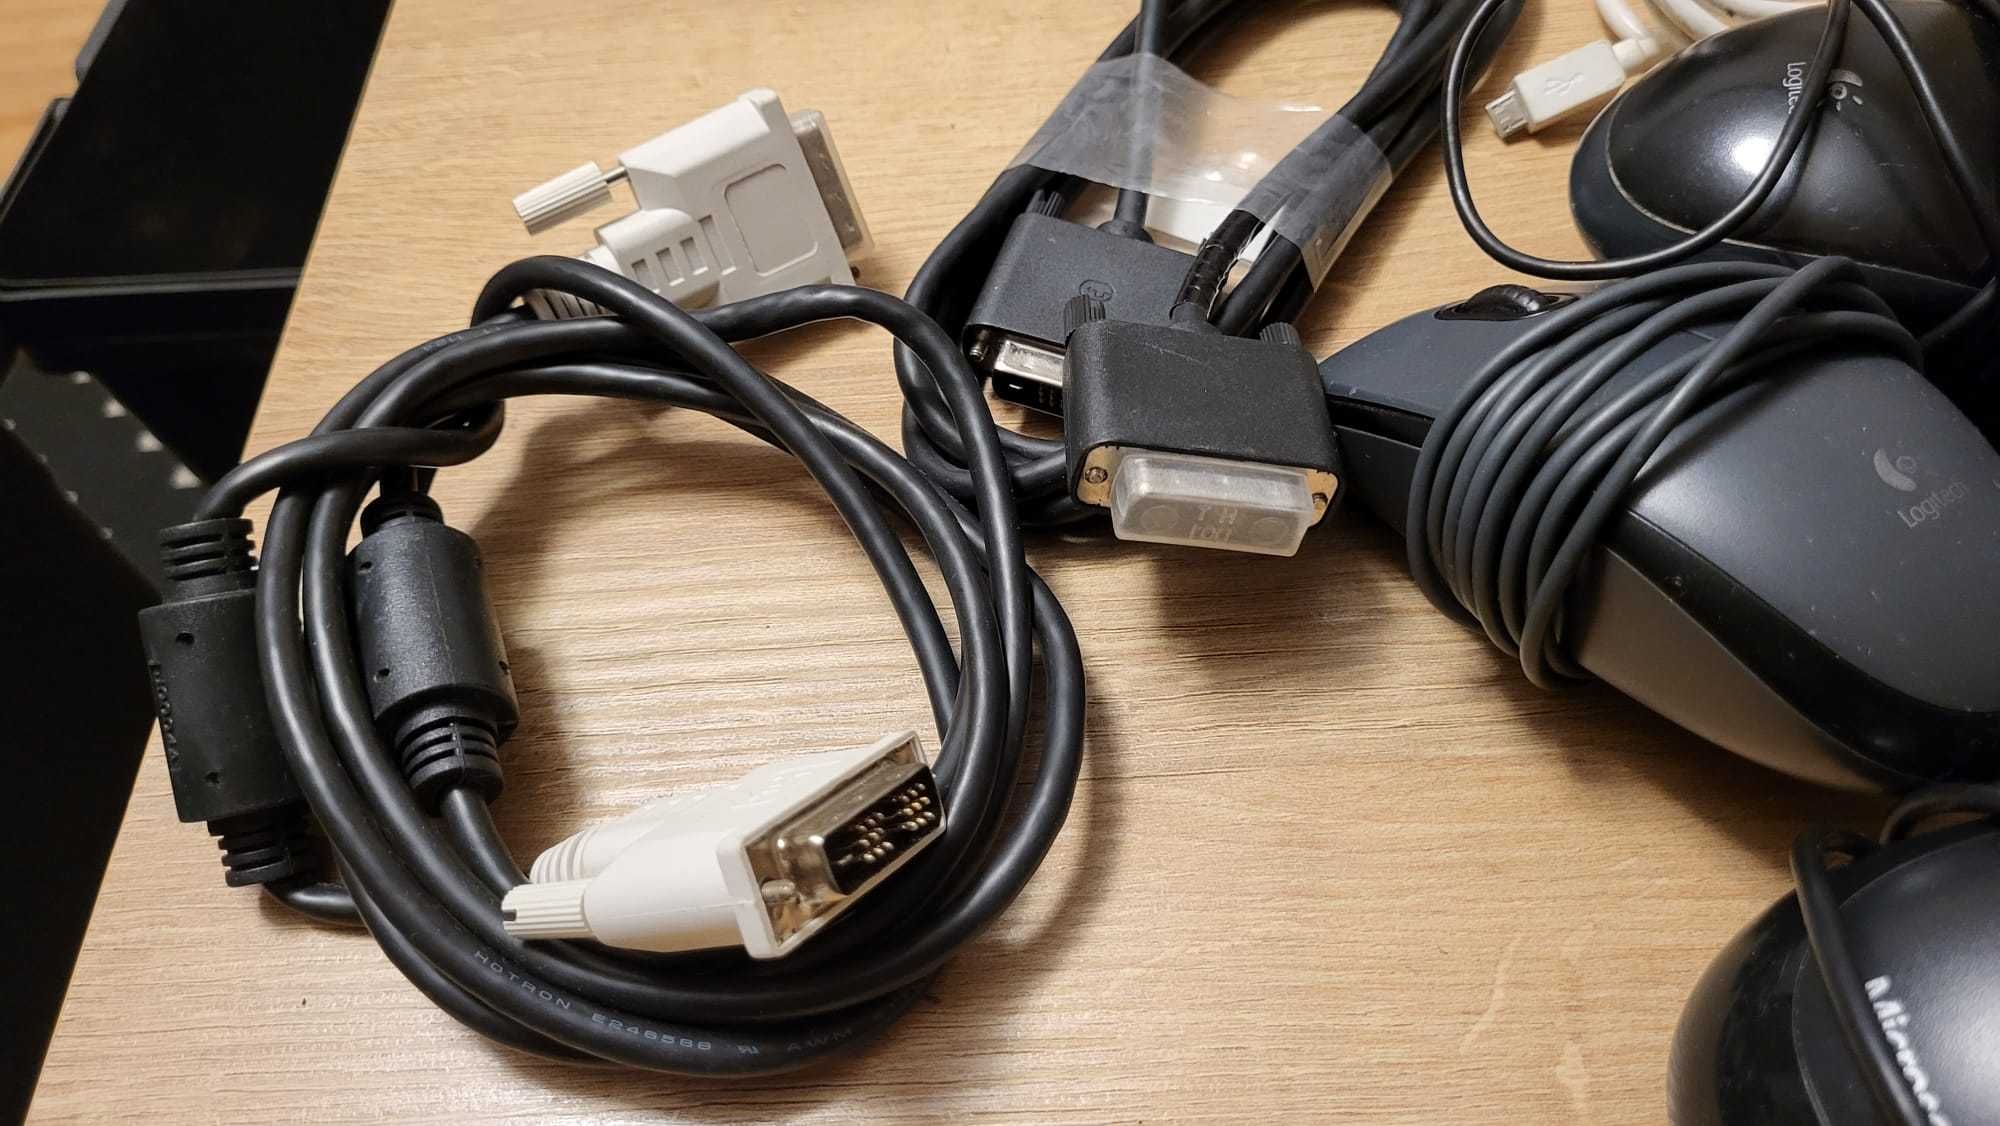 Myszki komputerowe USB + kable teleinformatyczne.